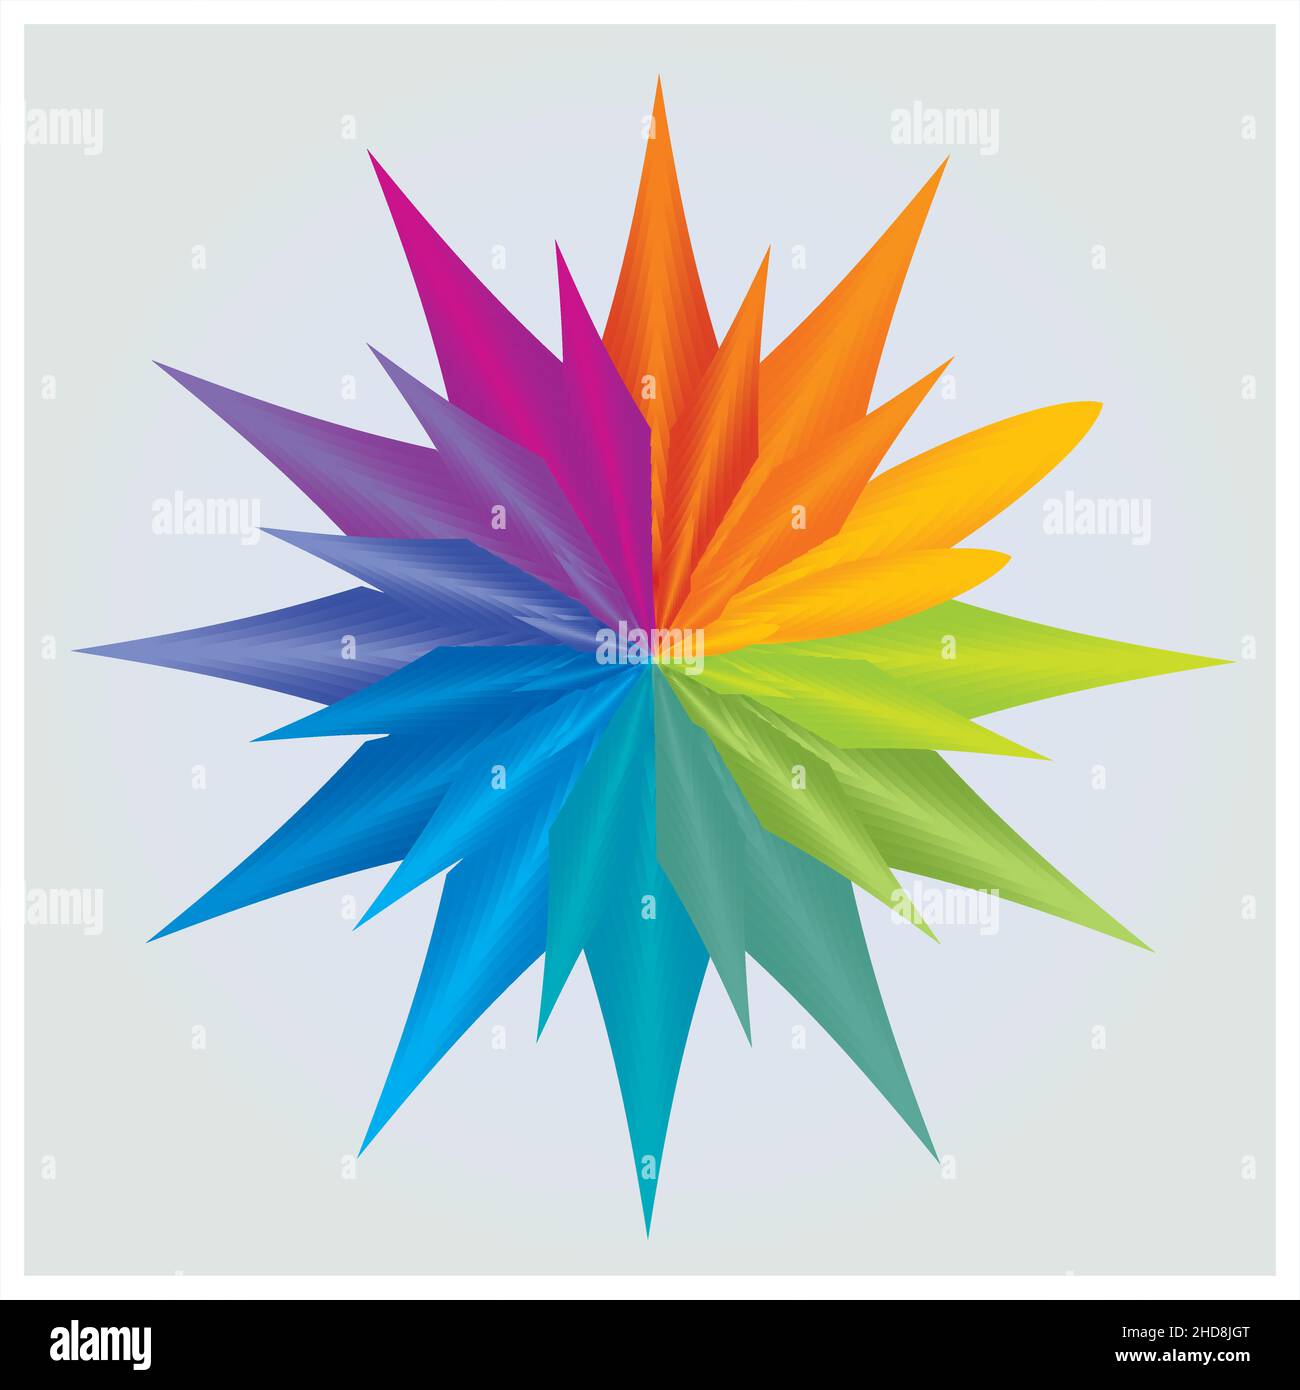 Farbe Rad, Kreis Blume Stern Isoliert Mandala Regenbogen Farben Stock Vektor